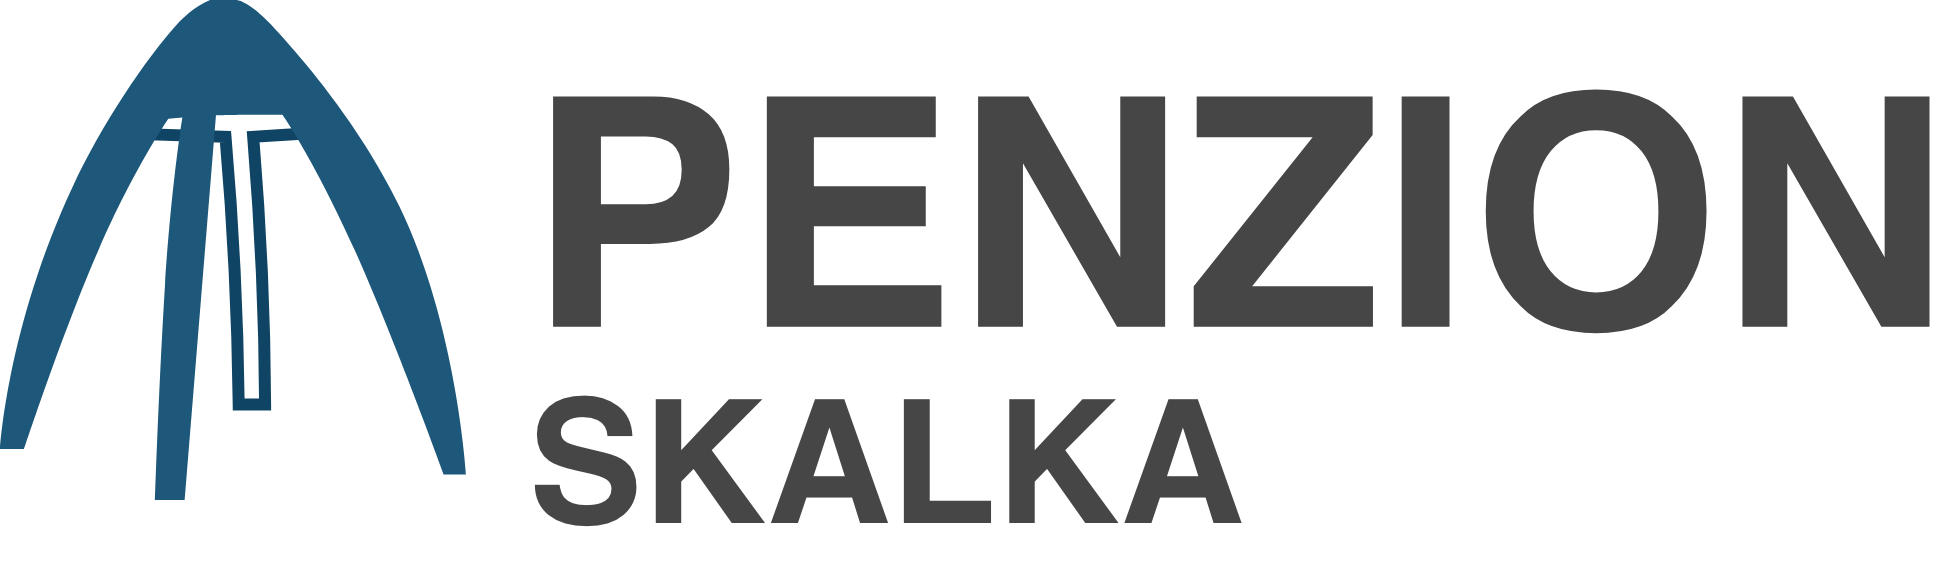 Penzion Skalka